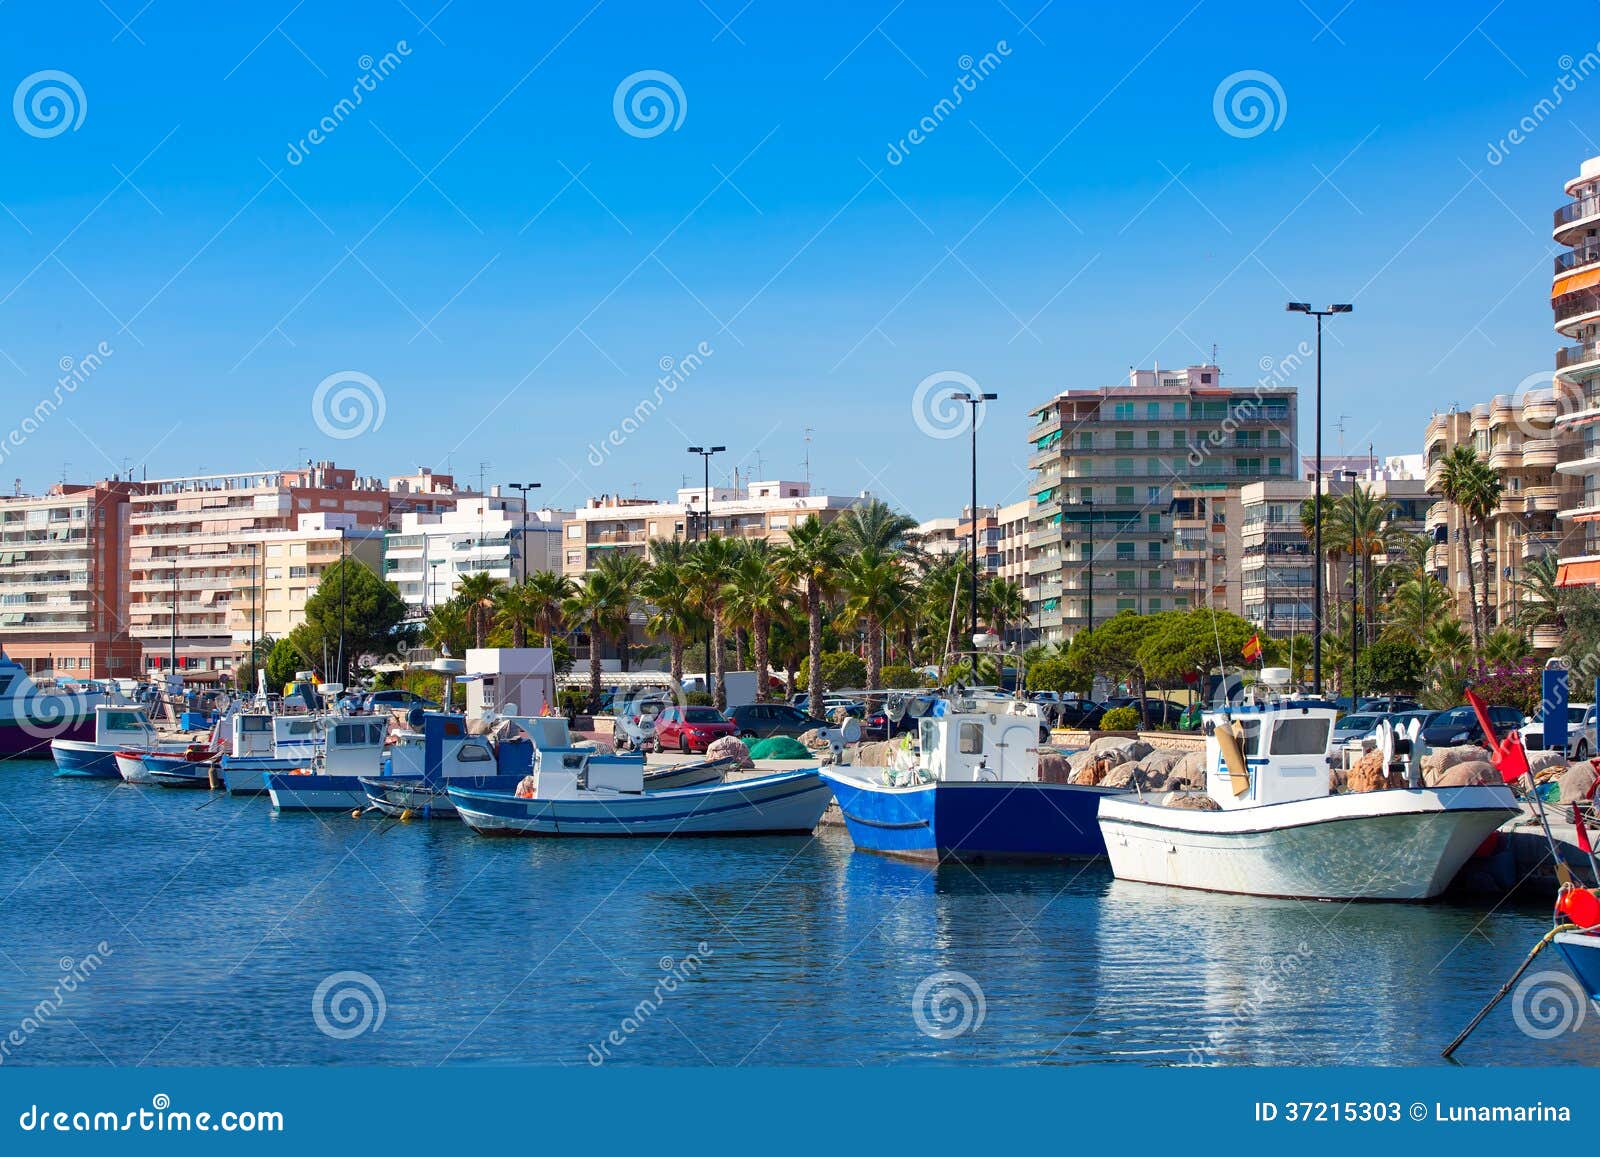 alicante santa pola port marina from valencian community